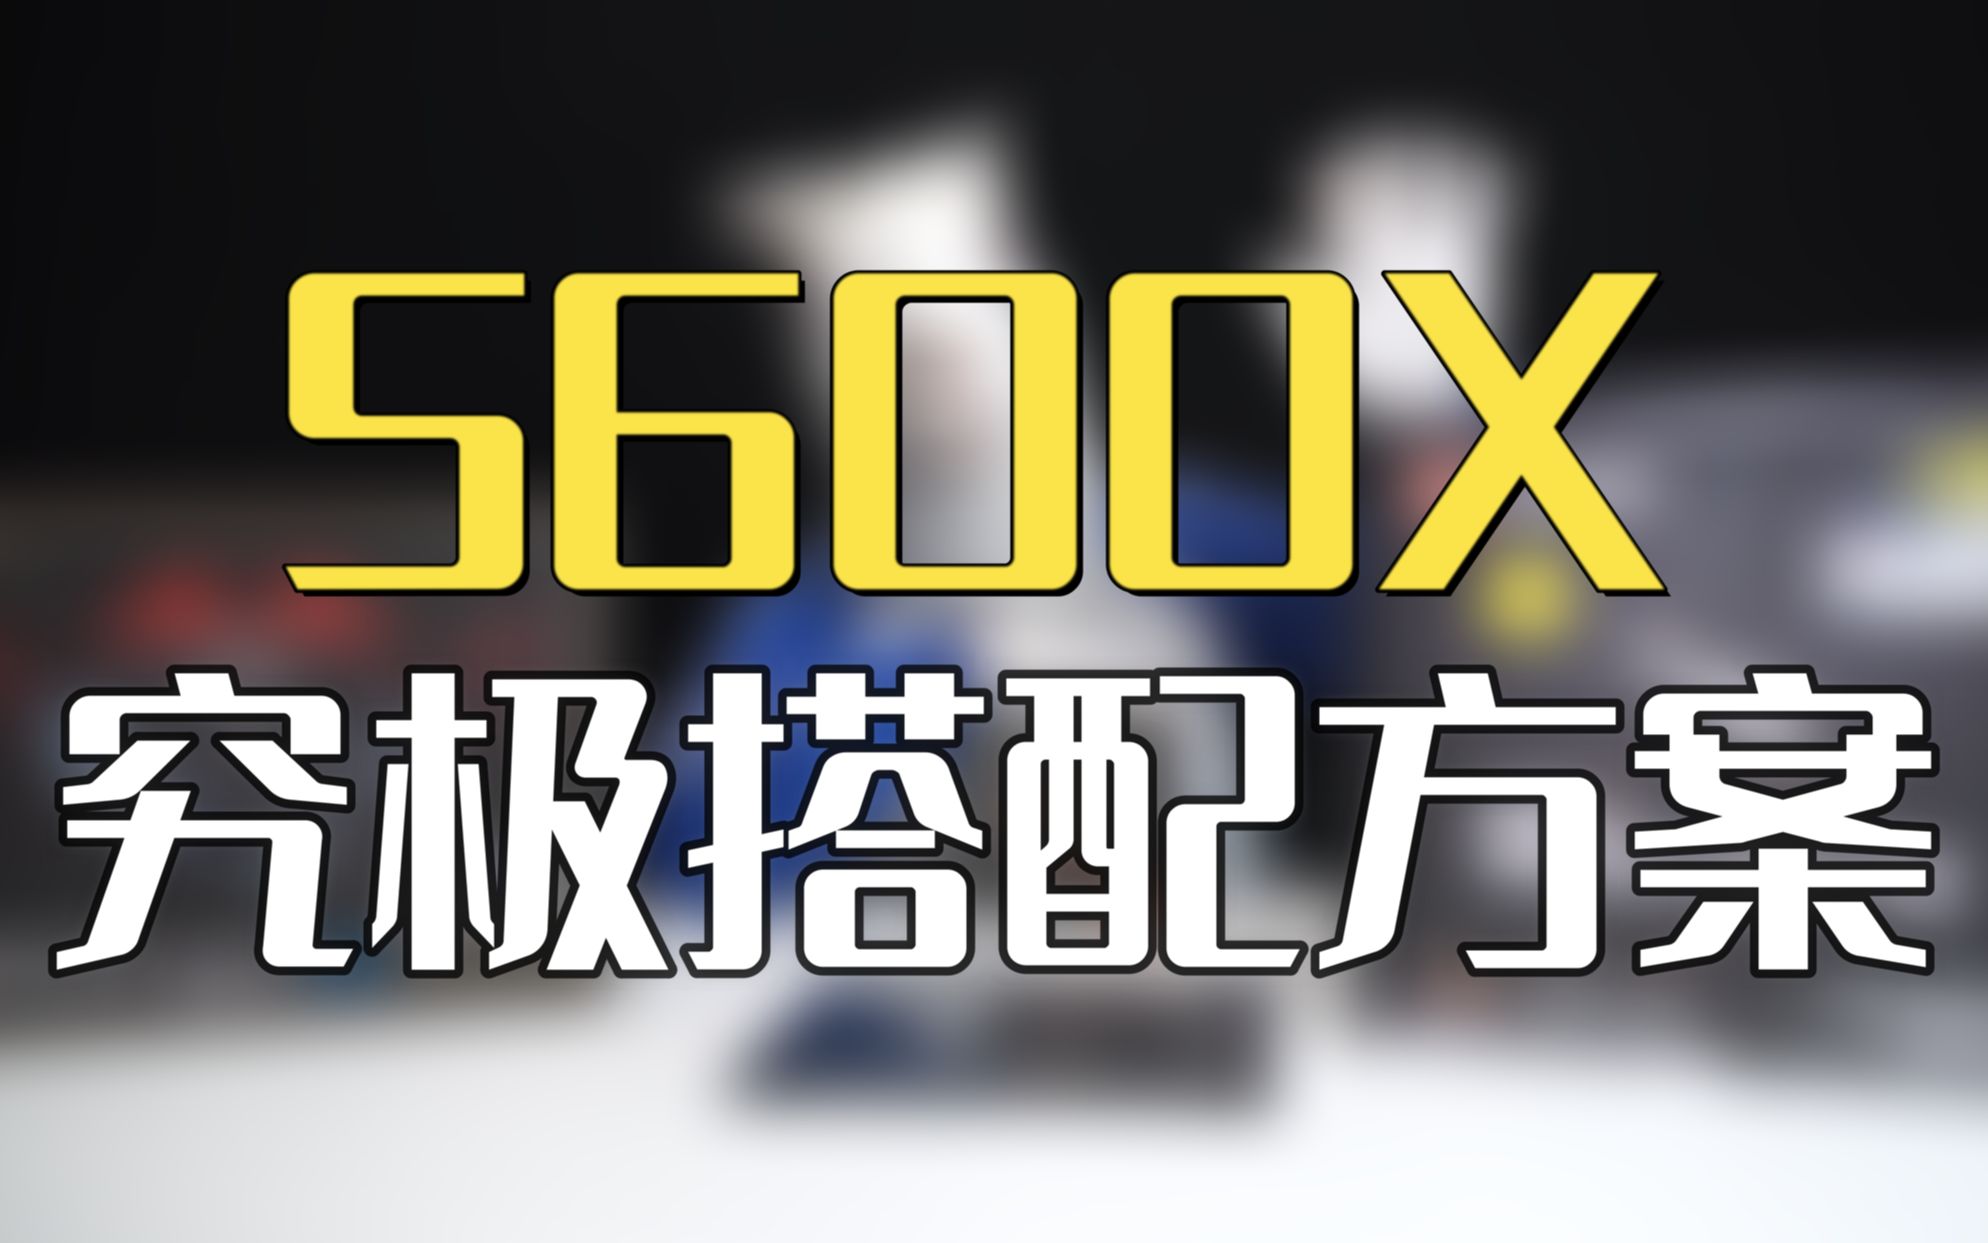 5600X究极满血终极搭配方案3.0版本